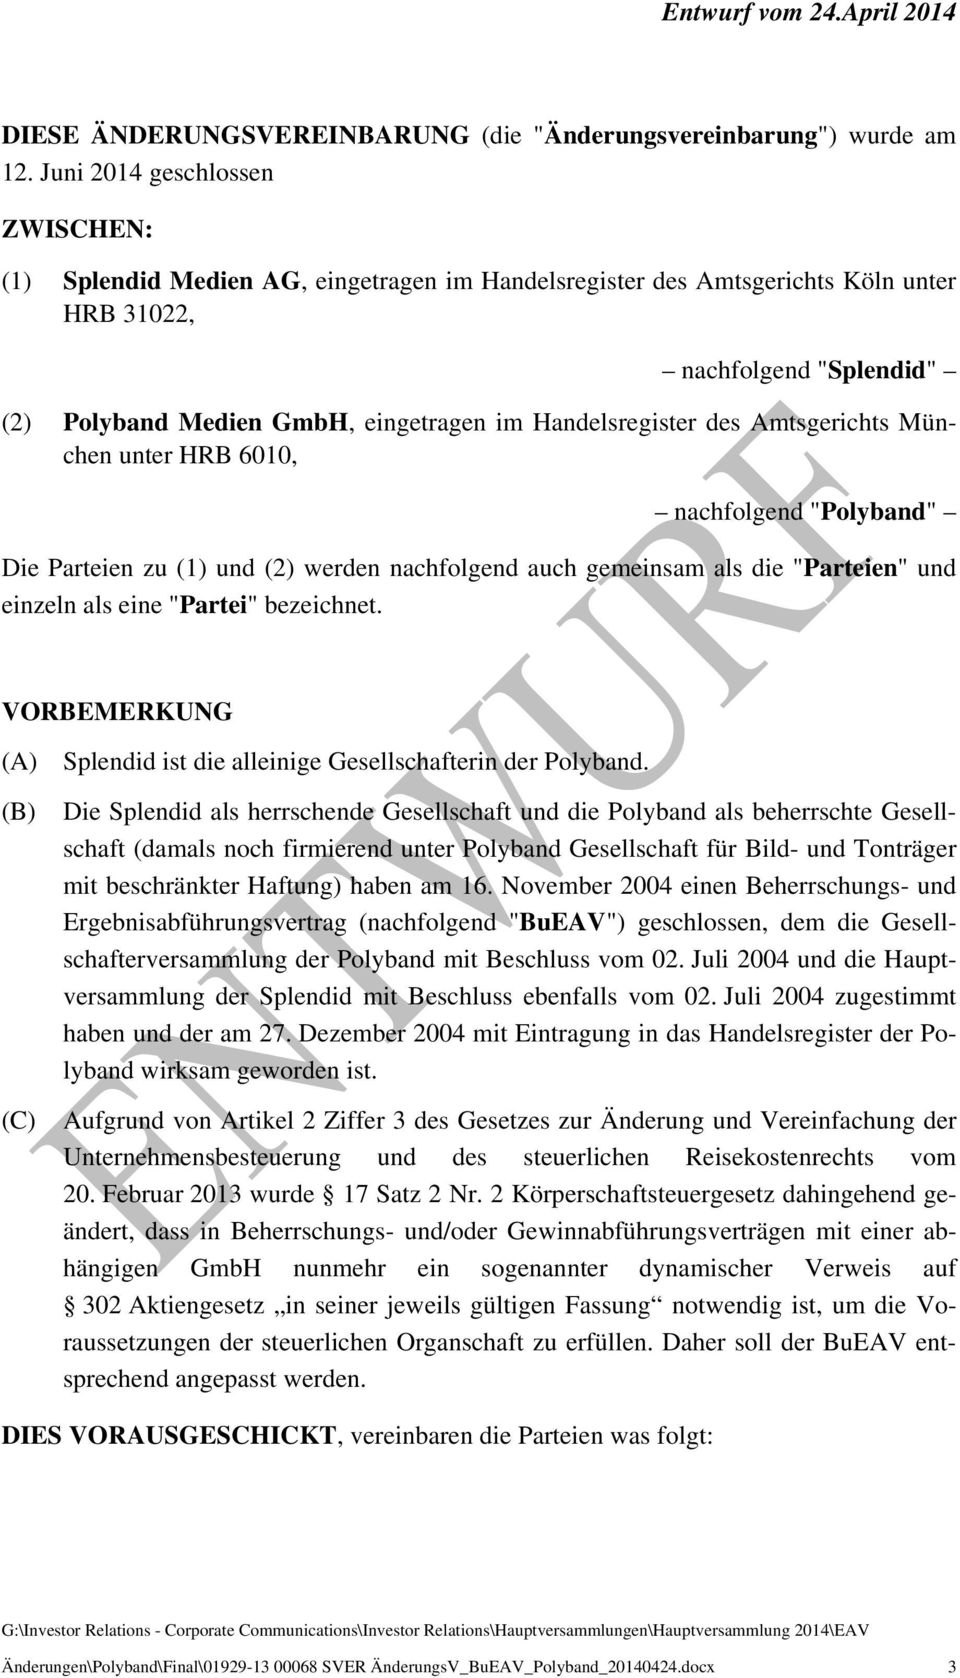 Handelsregister des Amtsgerichts München unter HRB 6010, nachfolgend "Polyband" Die Parteien zu (1) und (2) werden nachfolgend auch gemeinsam als die "Parteien" und einzeln als eine "Partei"